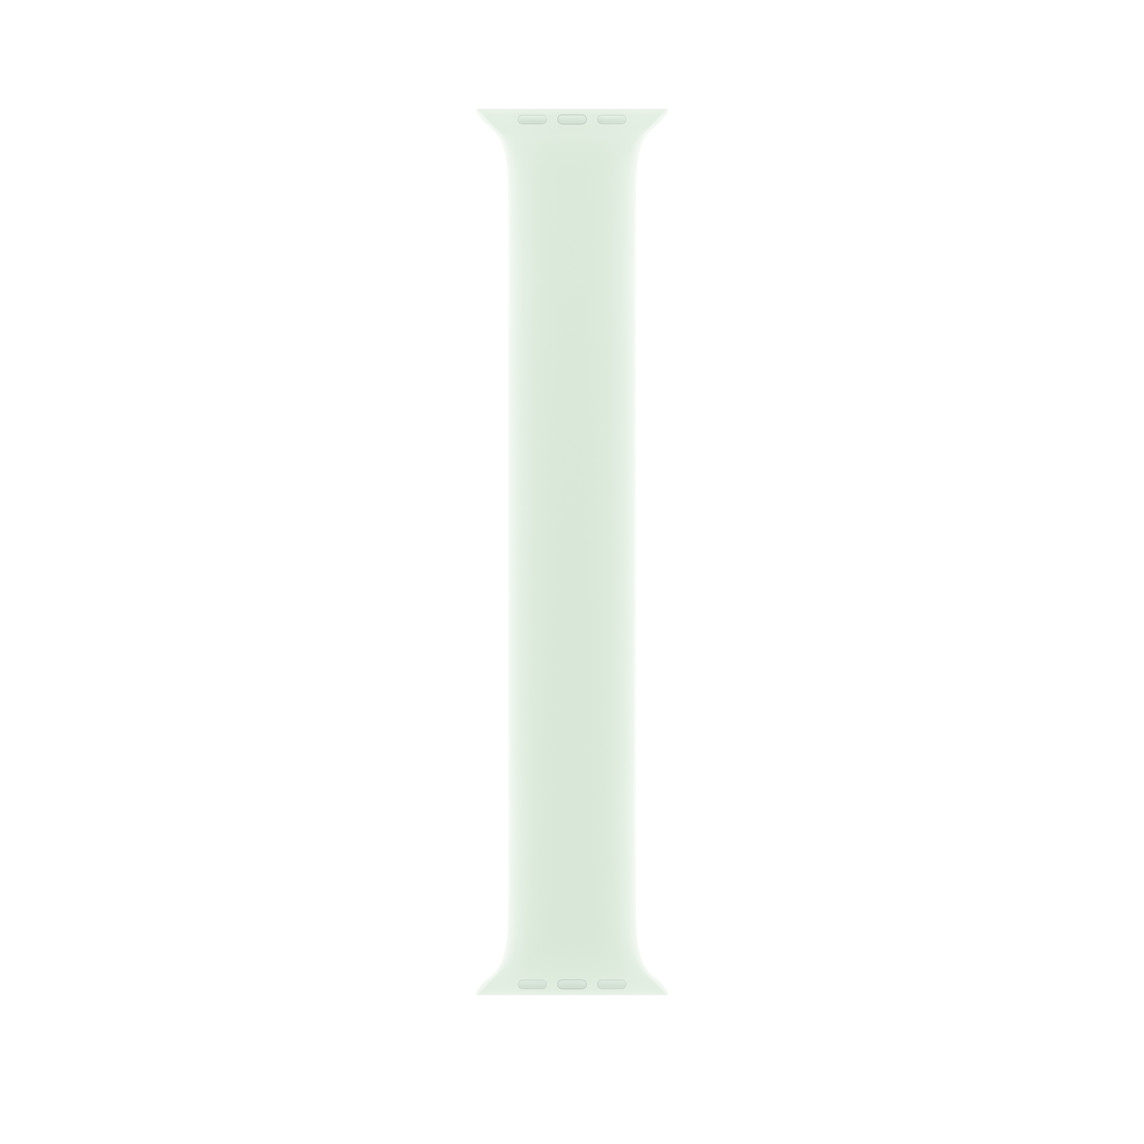 Correa uniloop color menta claro, hecha de fluoroelastómero suave sin hebillas ni cierres 